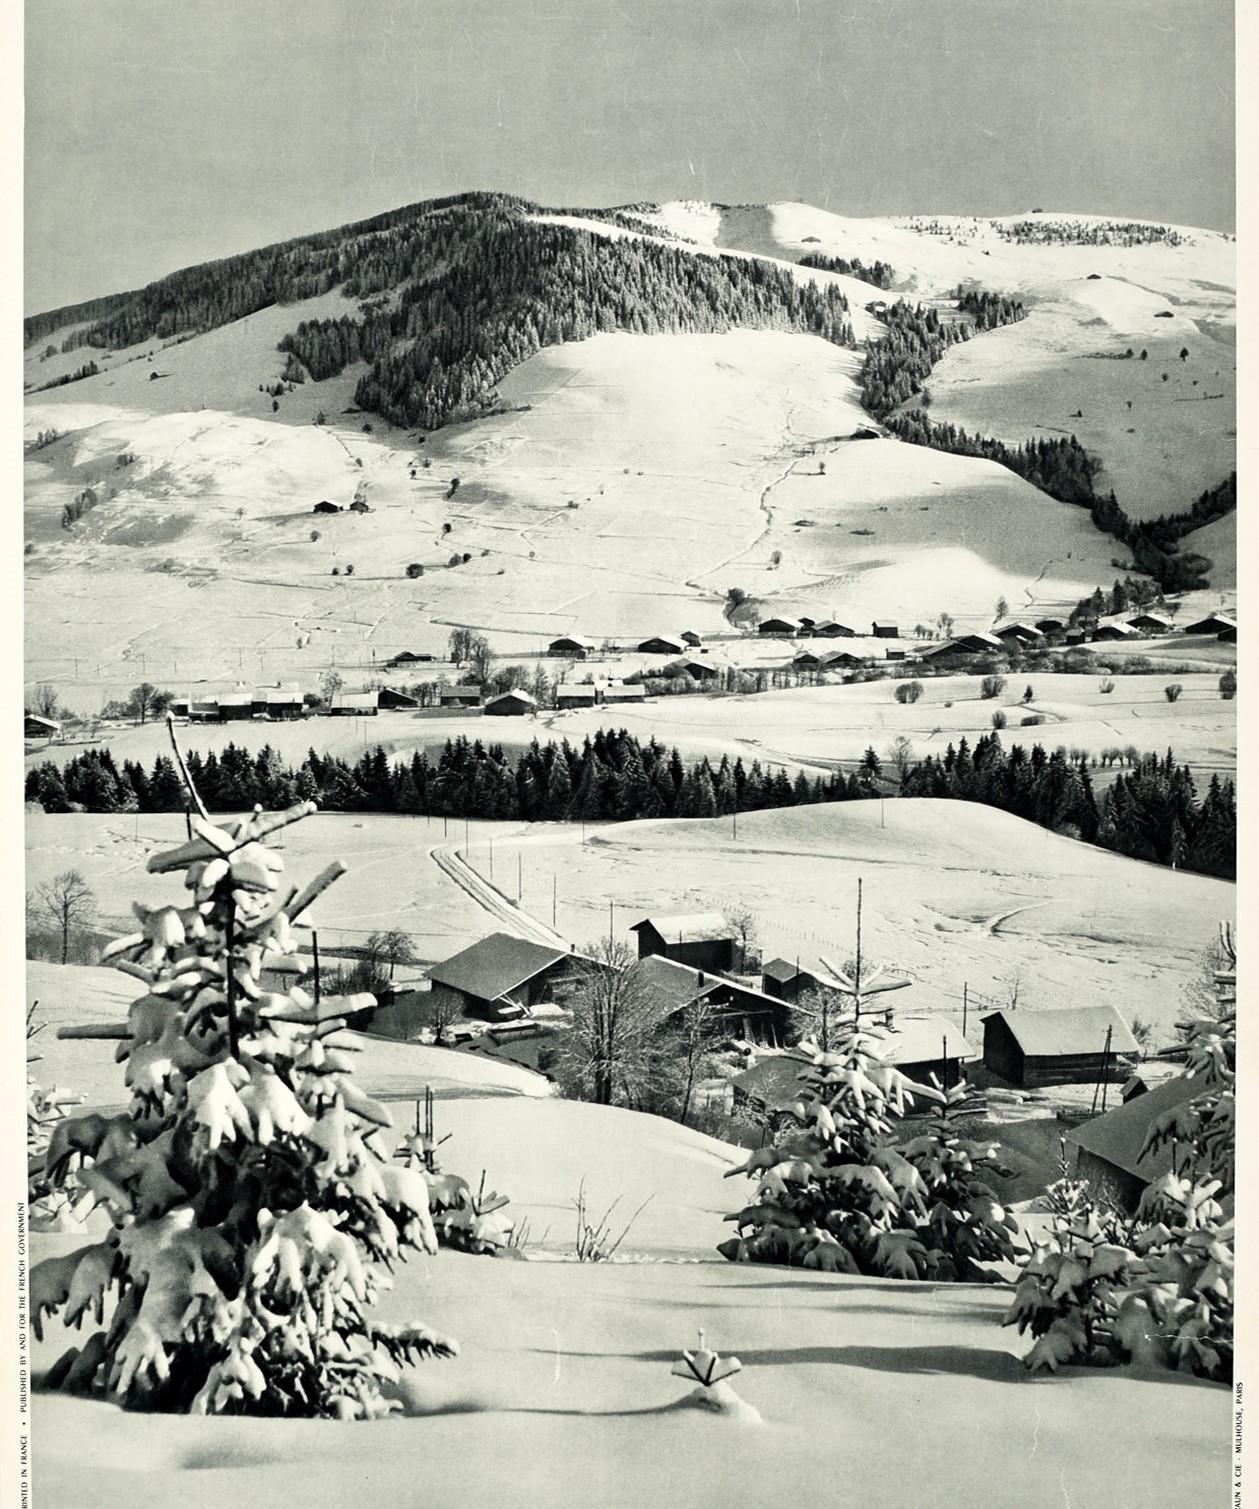 Original-Skireiseplakat für Frankreich - Megeve Haute Savoie - mit einer malerischen Schwarz-Weiß-Ansicht von schneebedeckten Bäumen und Dächern im Dorf vor den Bergen mit dem fetten Titeltext darunter. Das beliebte Skidorf Megeve liegt in den